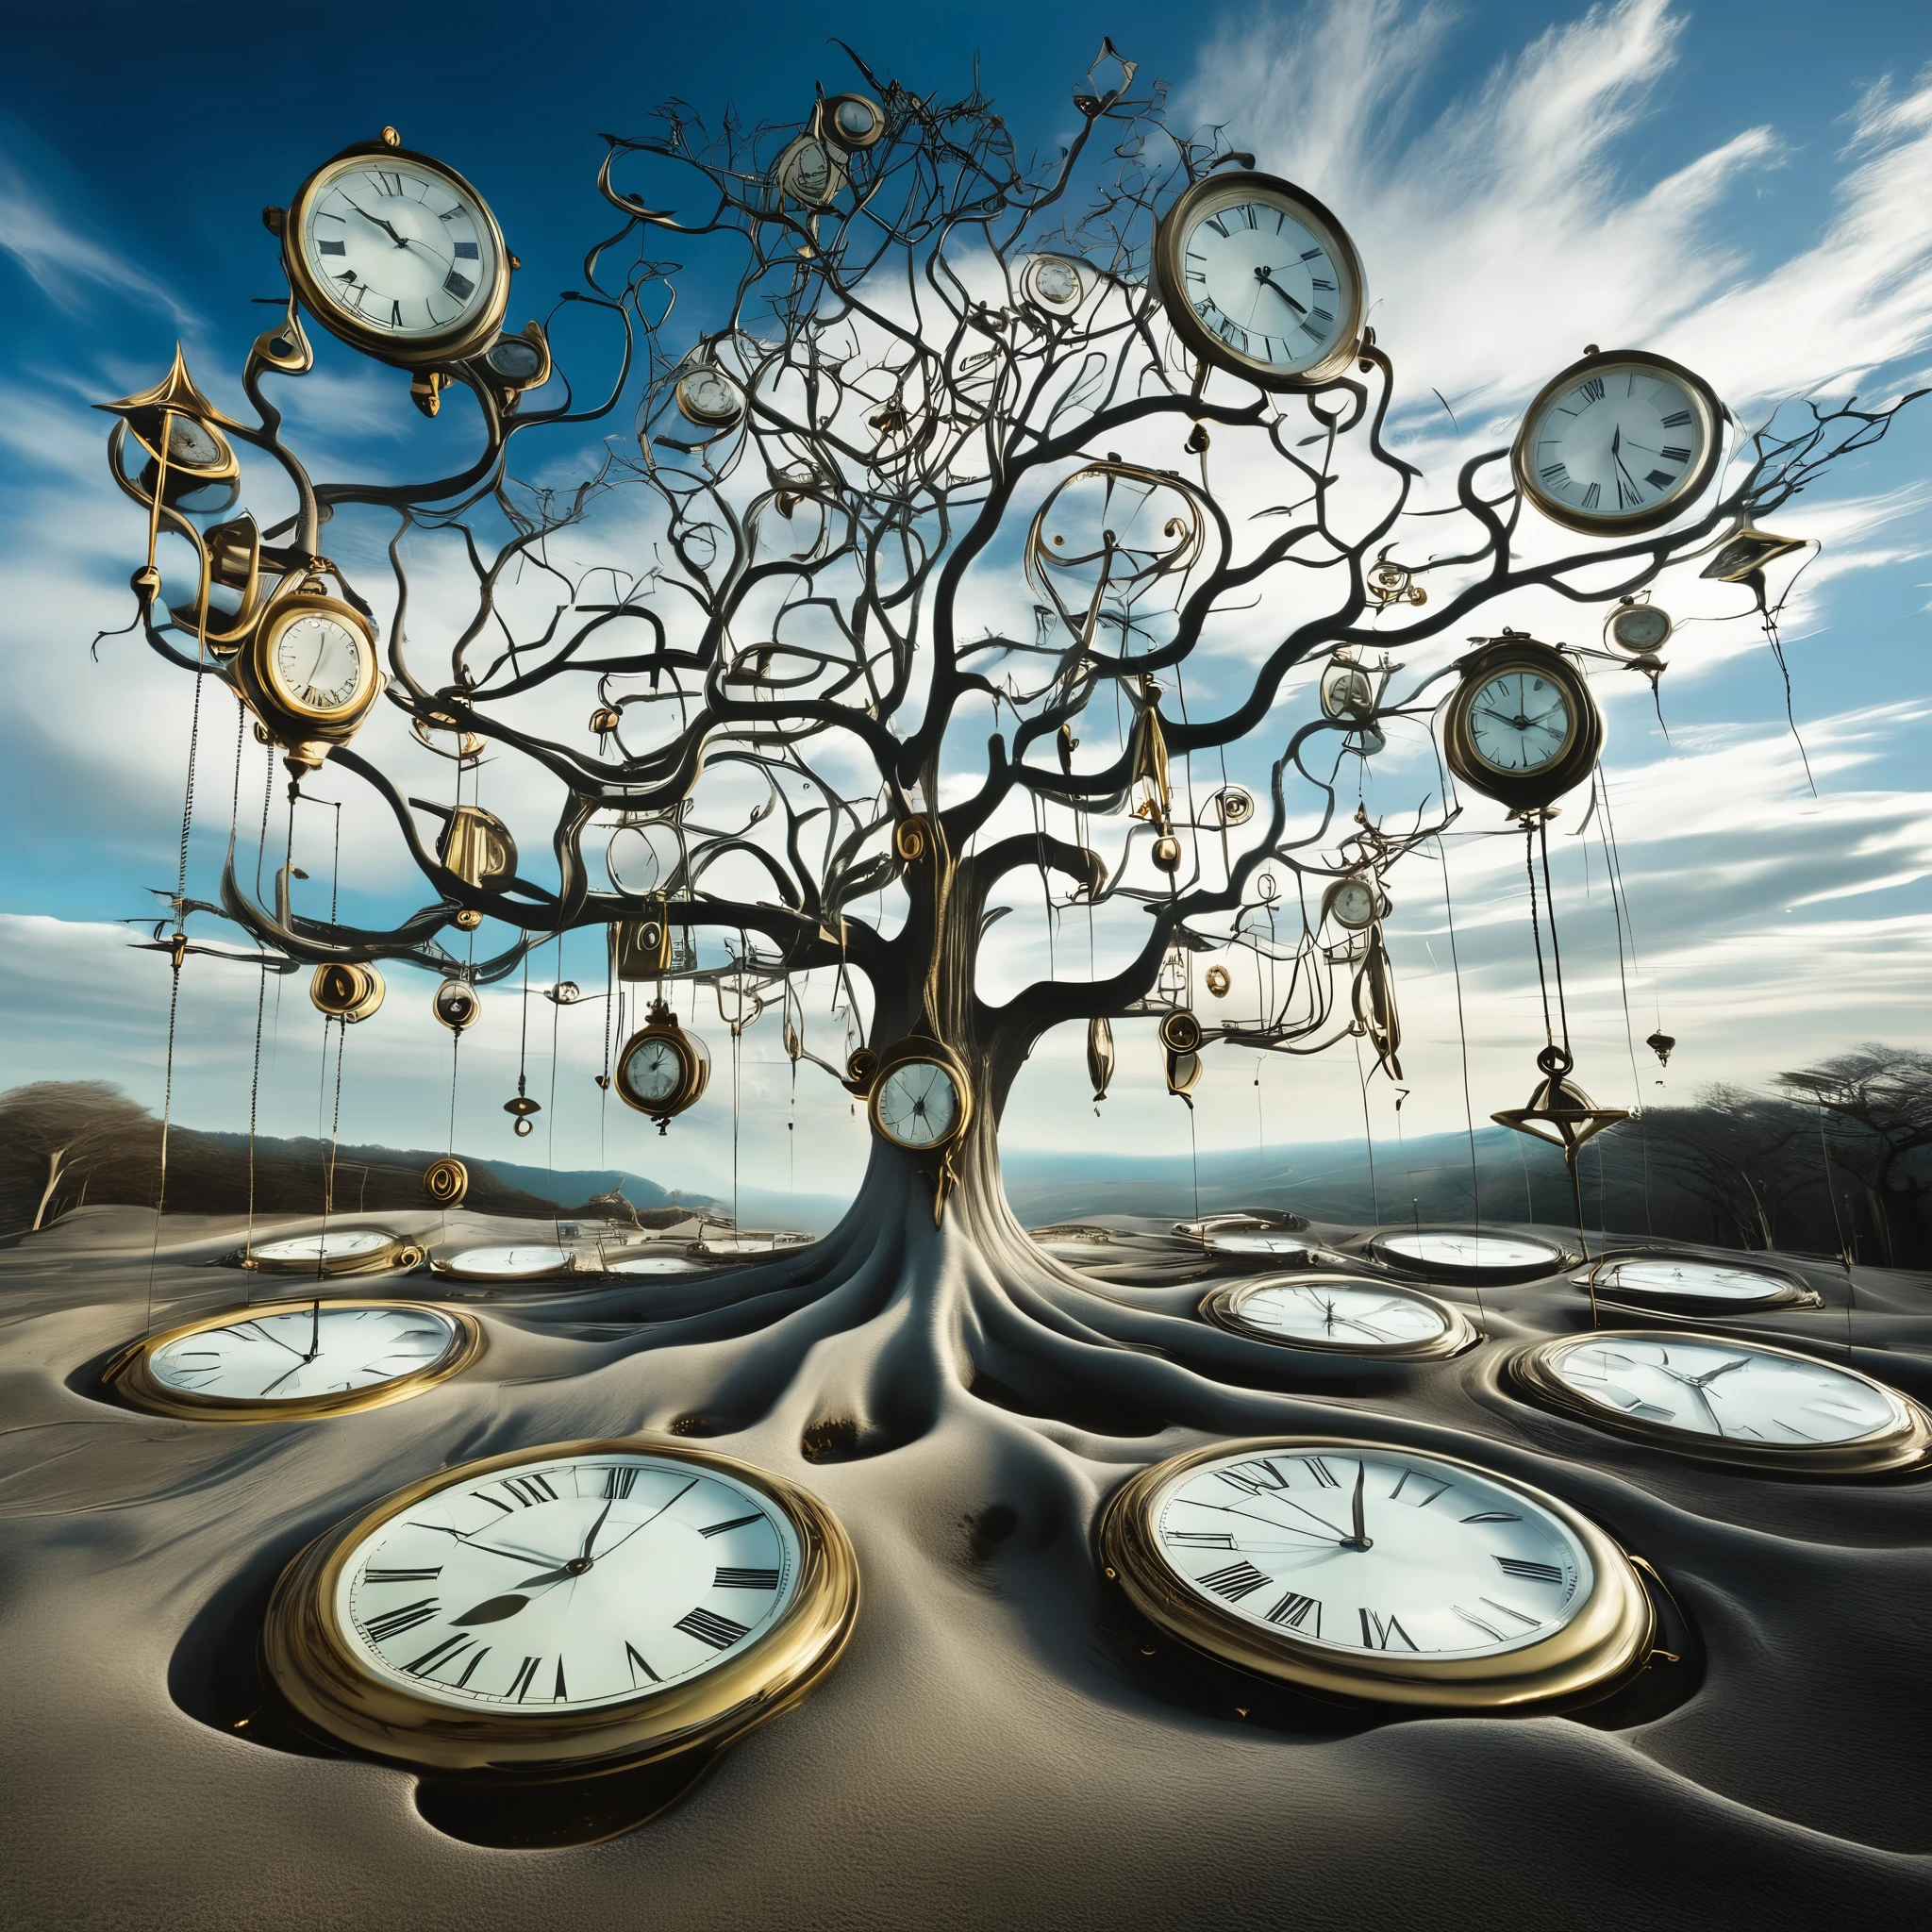 un surréaliste, Paysage inspiré de Salvador Dali avec des horloges fondantes drapées sur des arbres dénudés et flottant dans un vaste, Ciel sans fin. Les horloges représentent la nature cyclique du temps, avec leurs formes déformées symbolisant la fluidité de la perception.